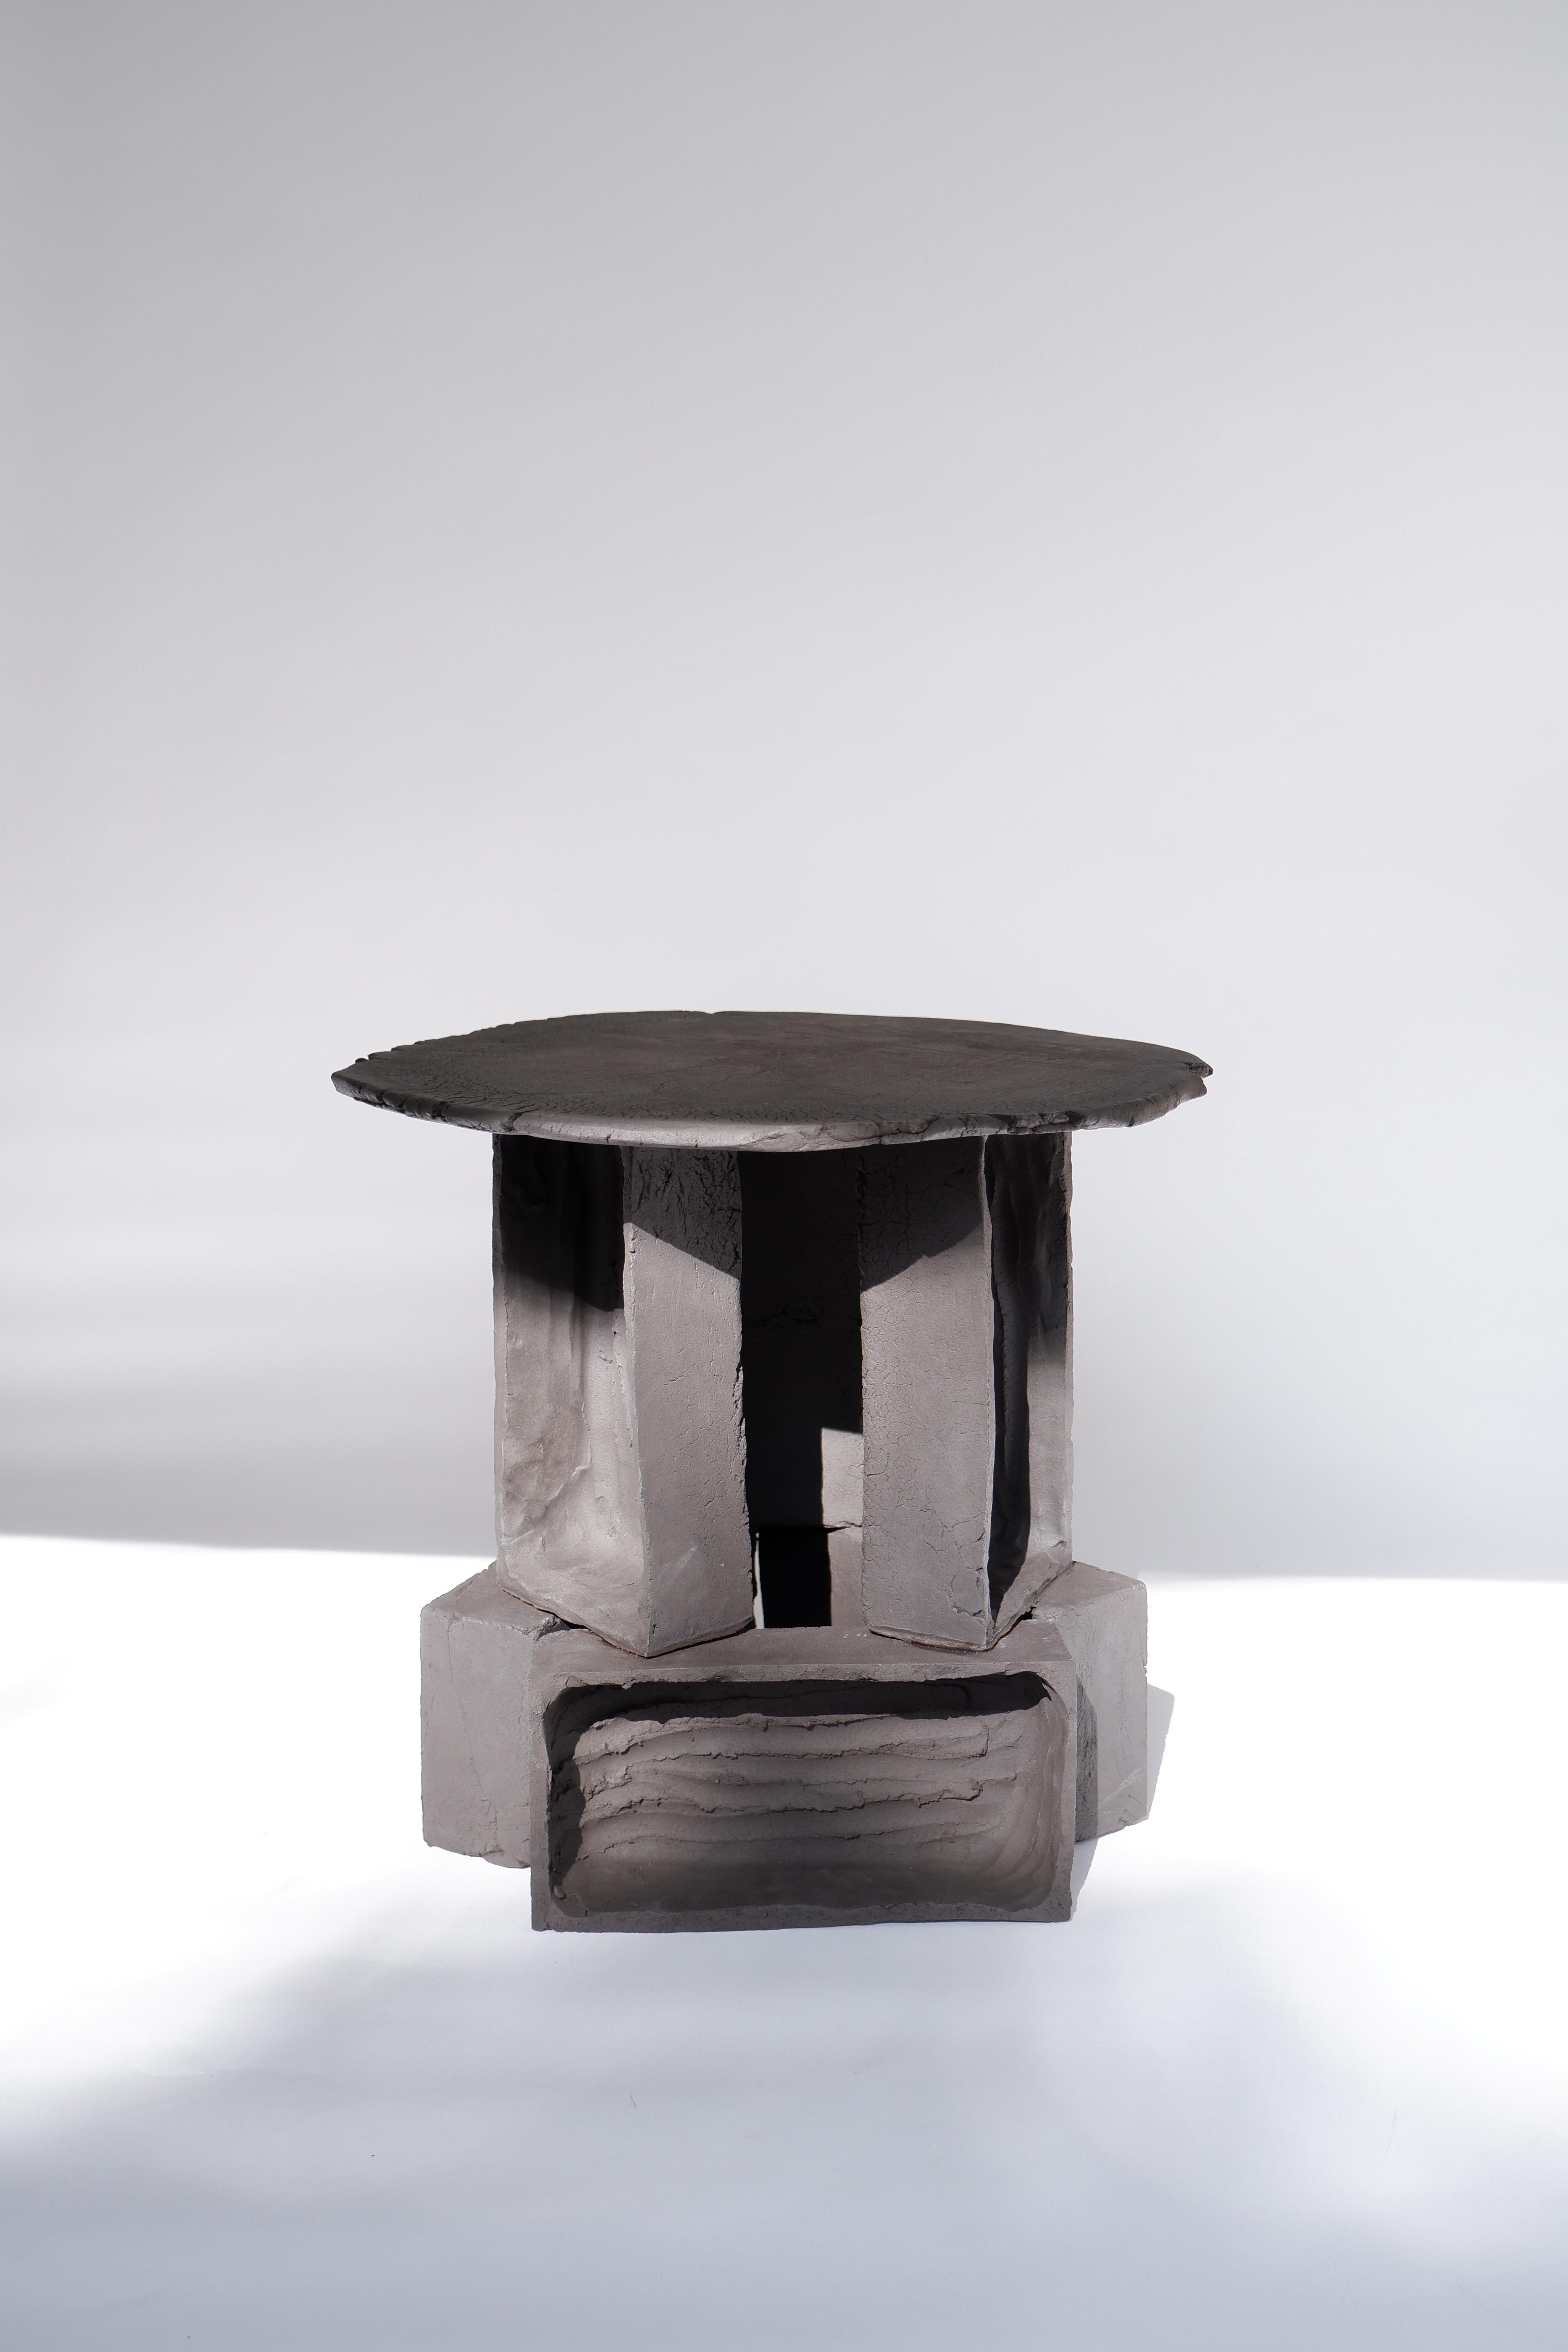 T02 Couchtisch von Ia Kutateladze
Einer der  Eine Art.
Abmessungen: D 38 x H 37 cm.
MATERIALIEN: Schwarzer Ton.

Jedes Stück ist ein Unikat, da es in freier Handarbeit hergestellt wird. Das Oberteil ist immer unregelmäßig und einmalig. Mögliche